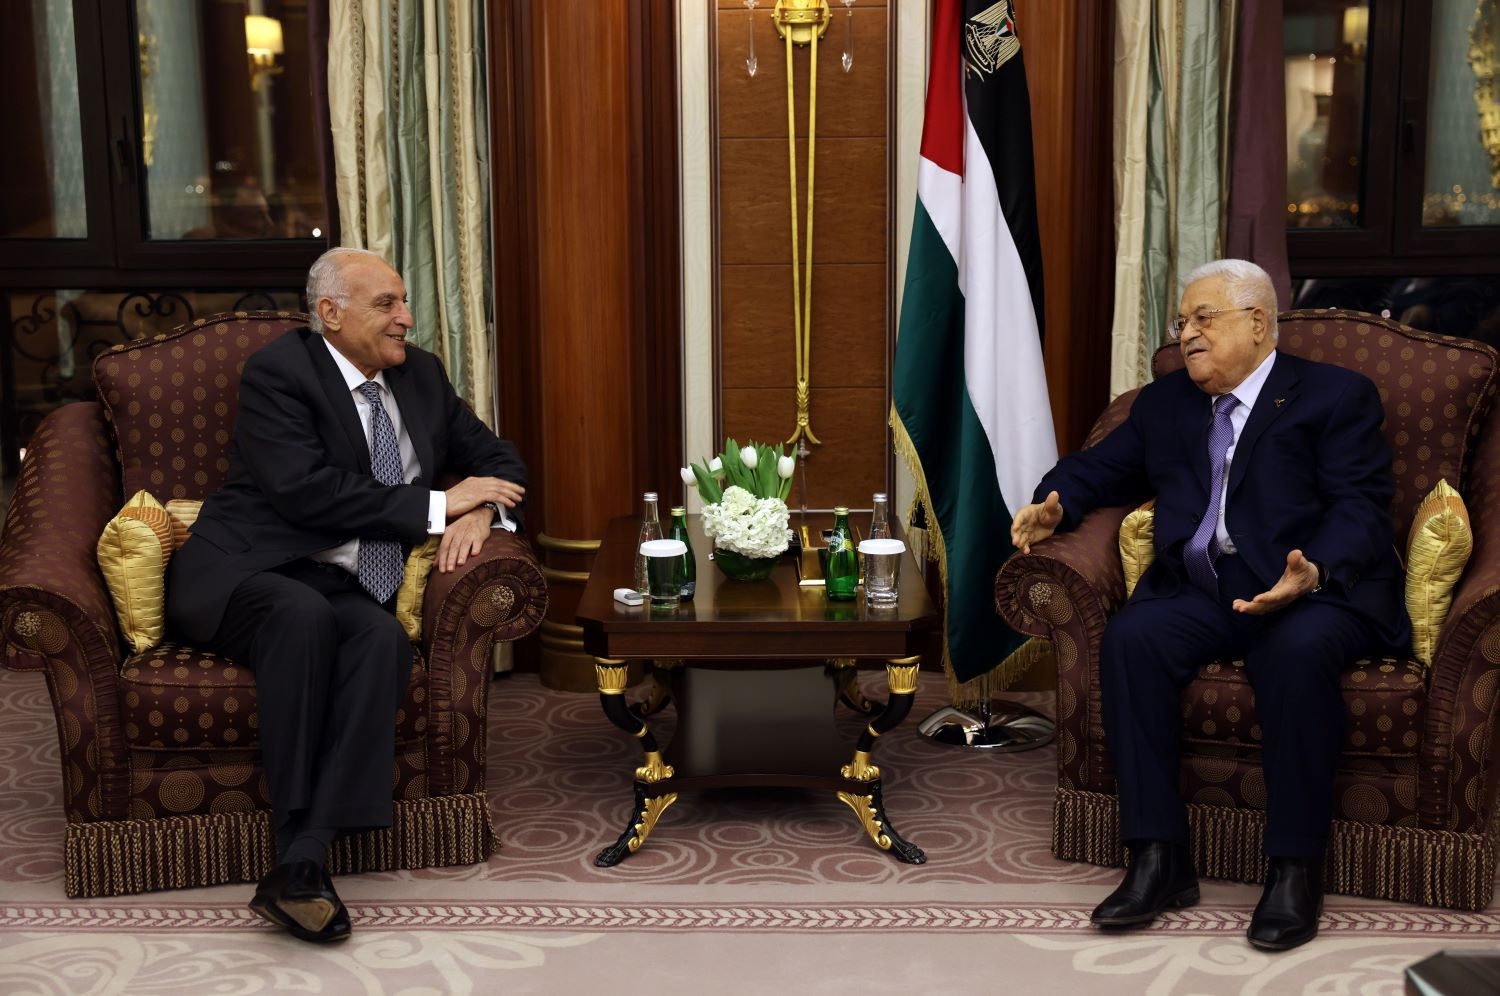 الرئيس عباس يستقبل وزير خارجية الجزائر في الرياض